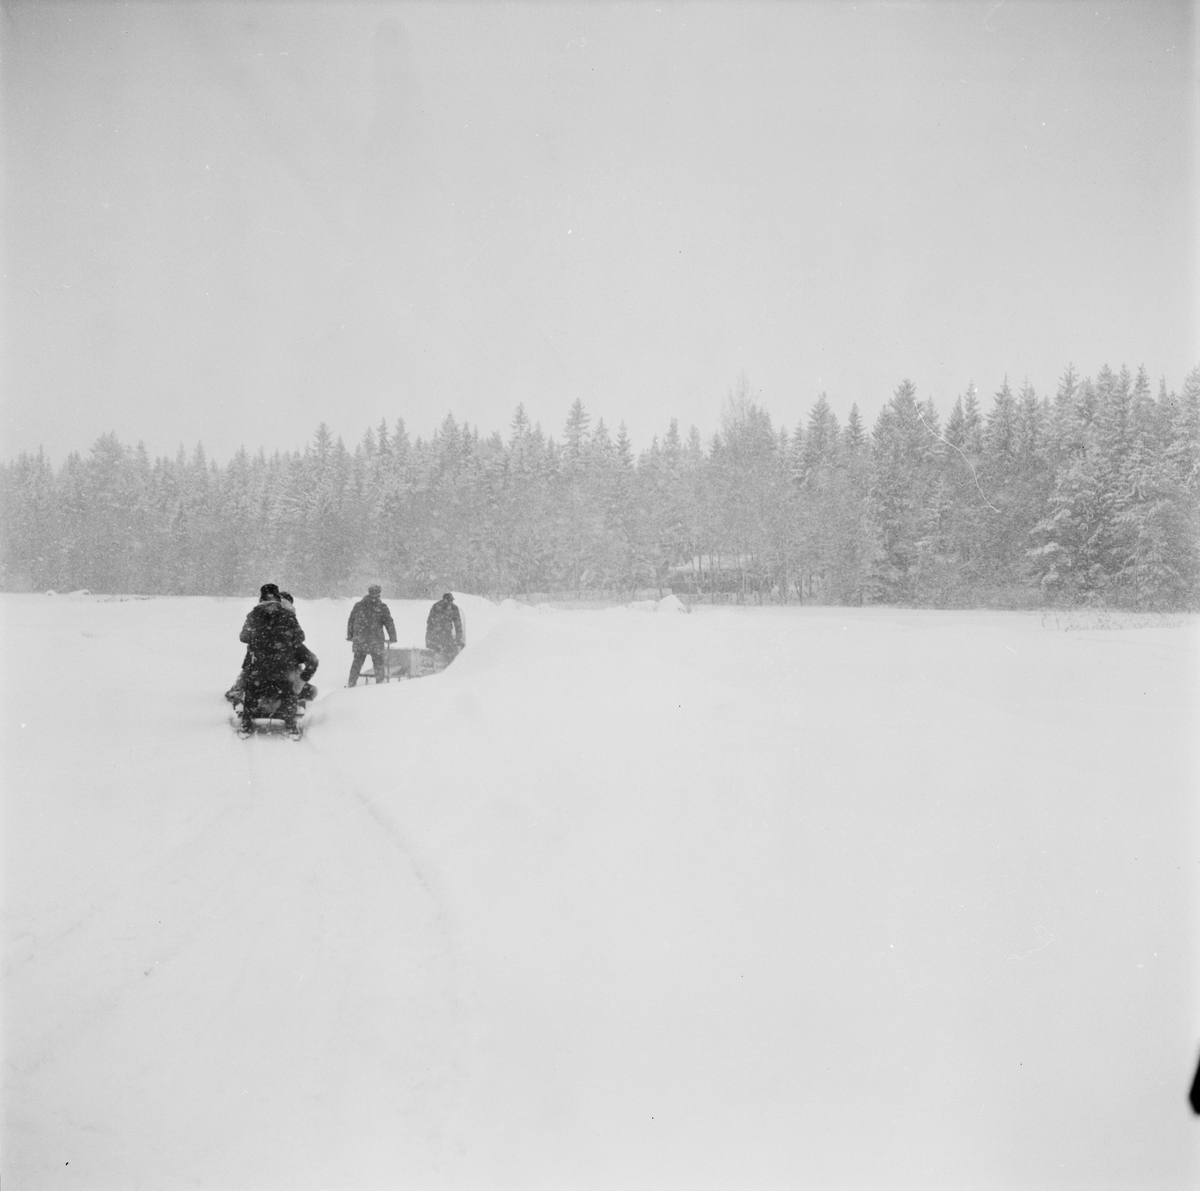 Män på snöskoter, Uppland, februari 1972